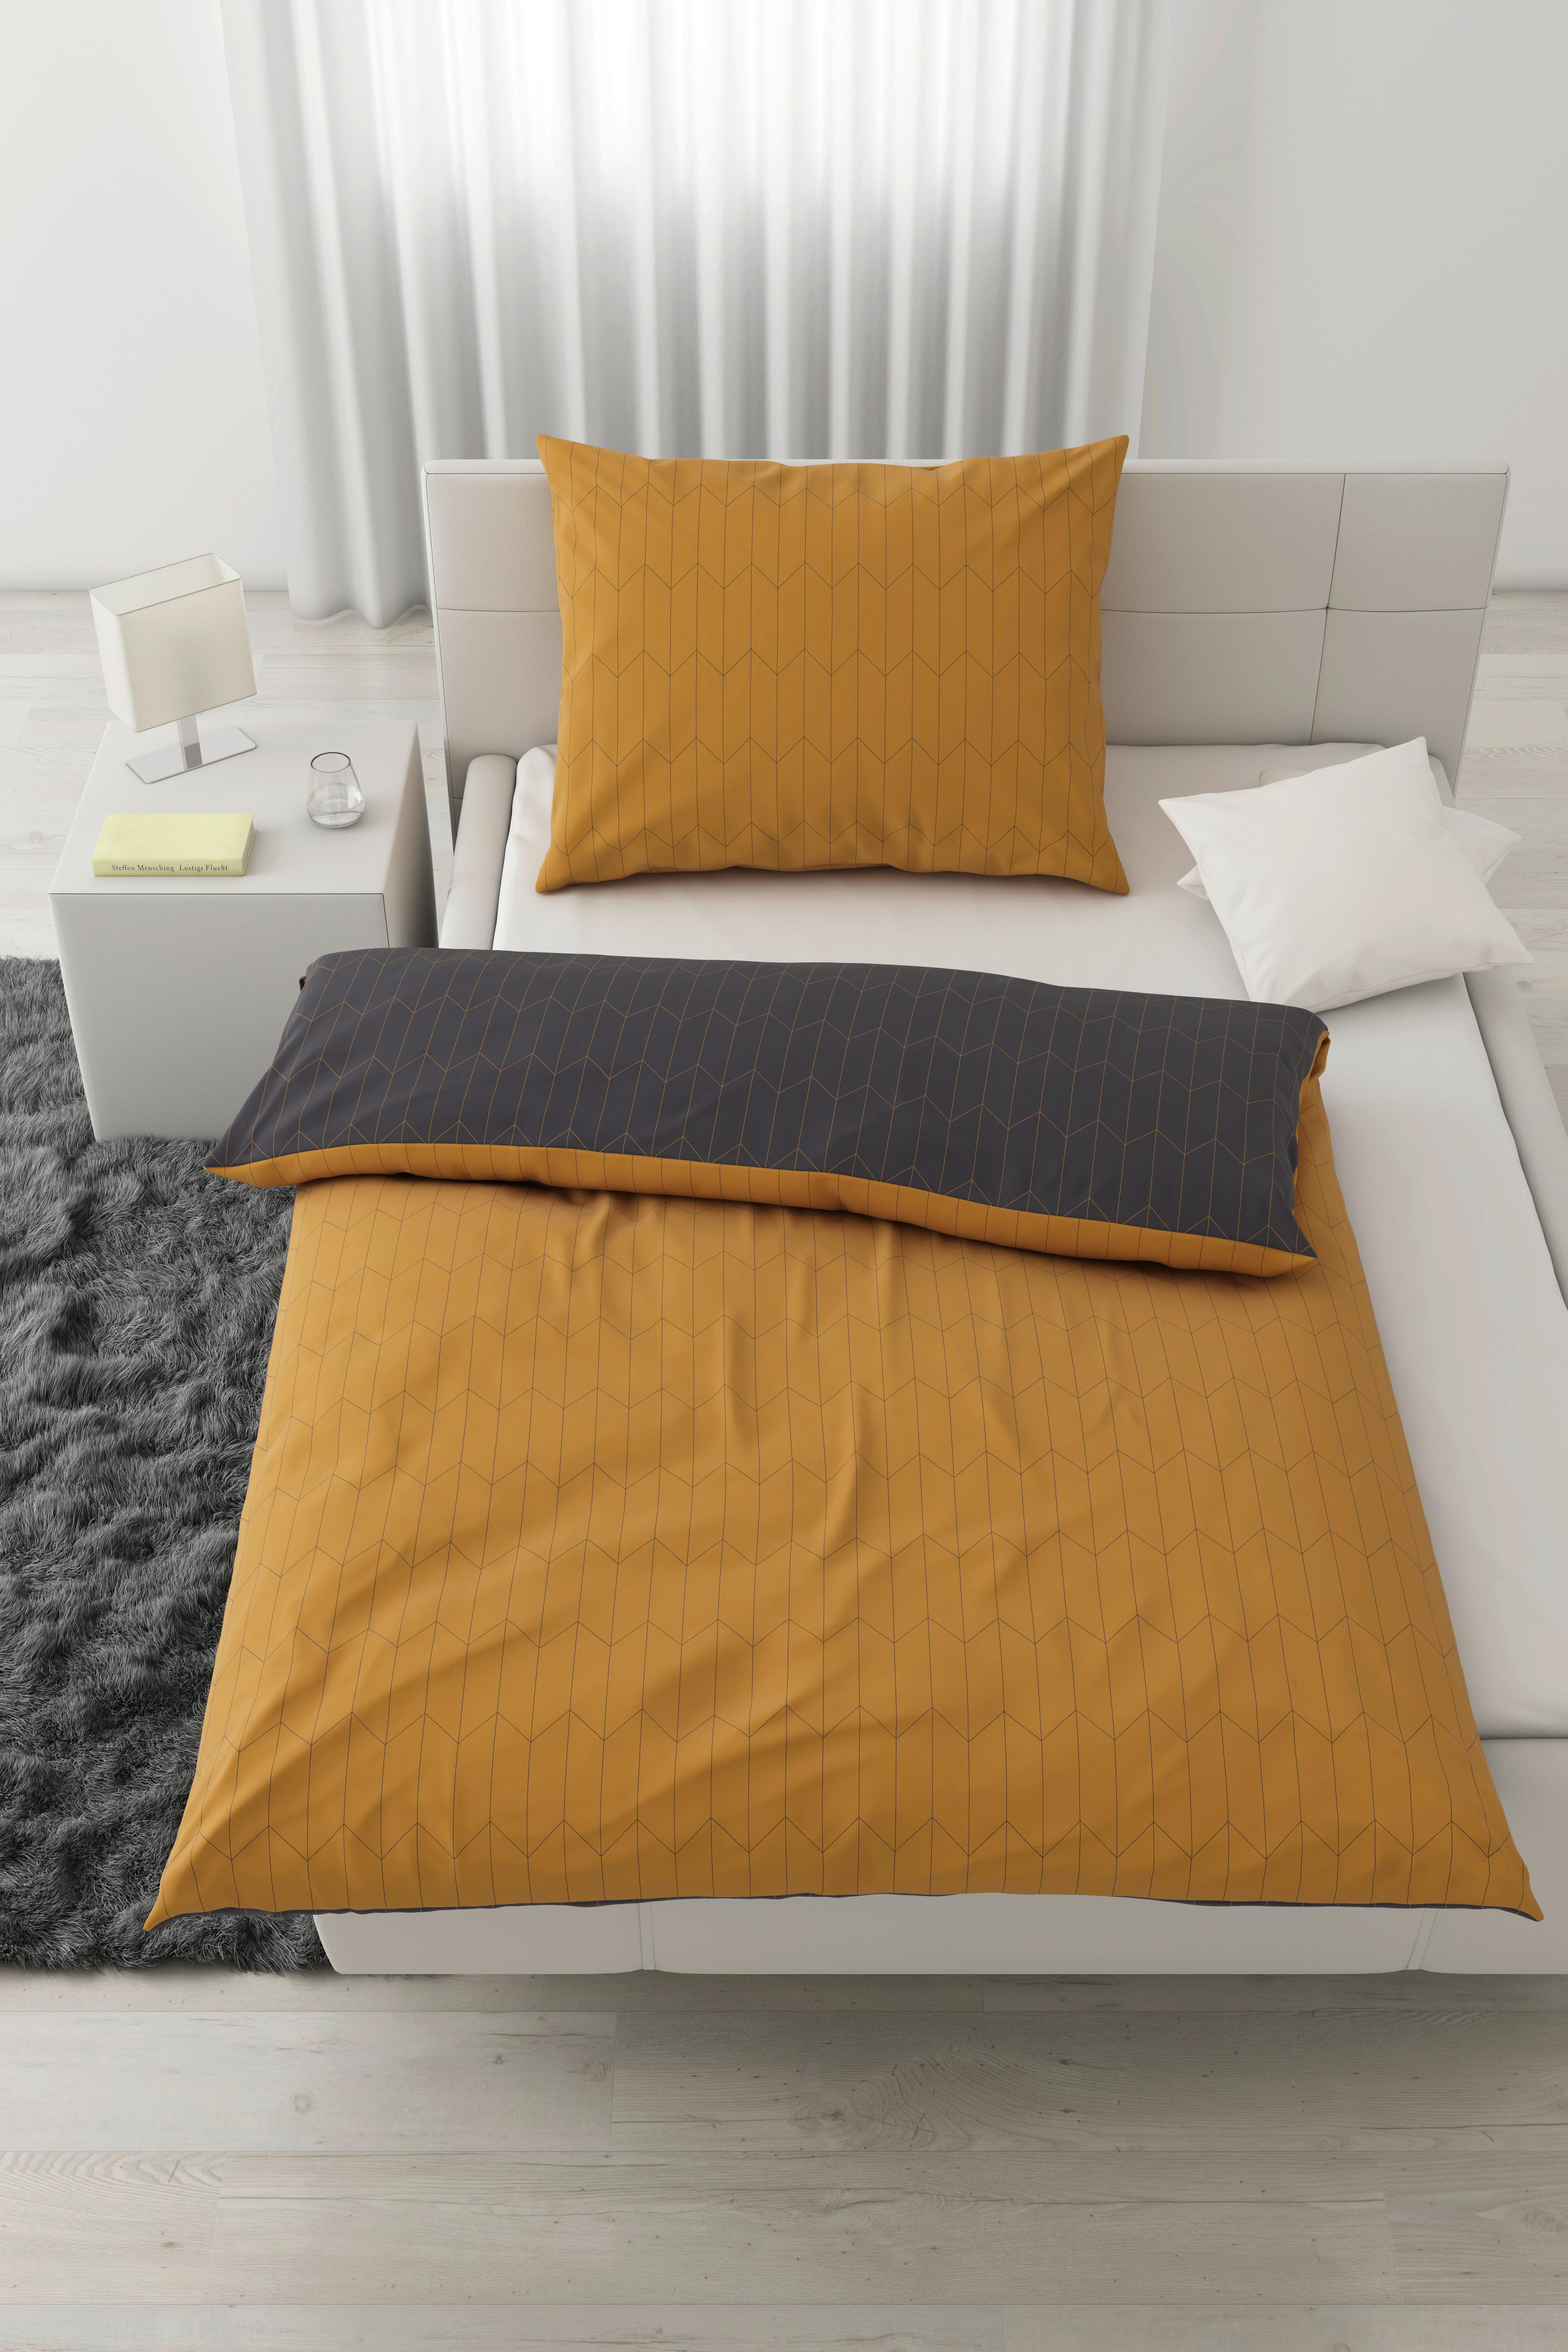 Oboustranné Povlečení Tegola, 140/200cm - šedá/žlutá, Moderní, textil (140/200cm) - Modern Living